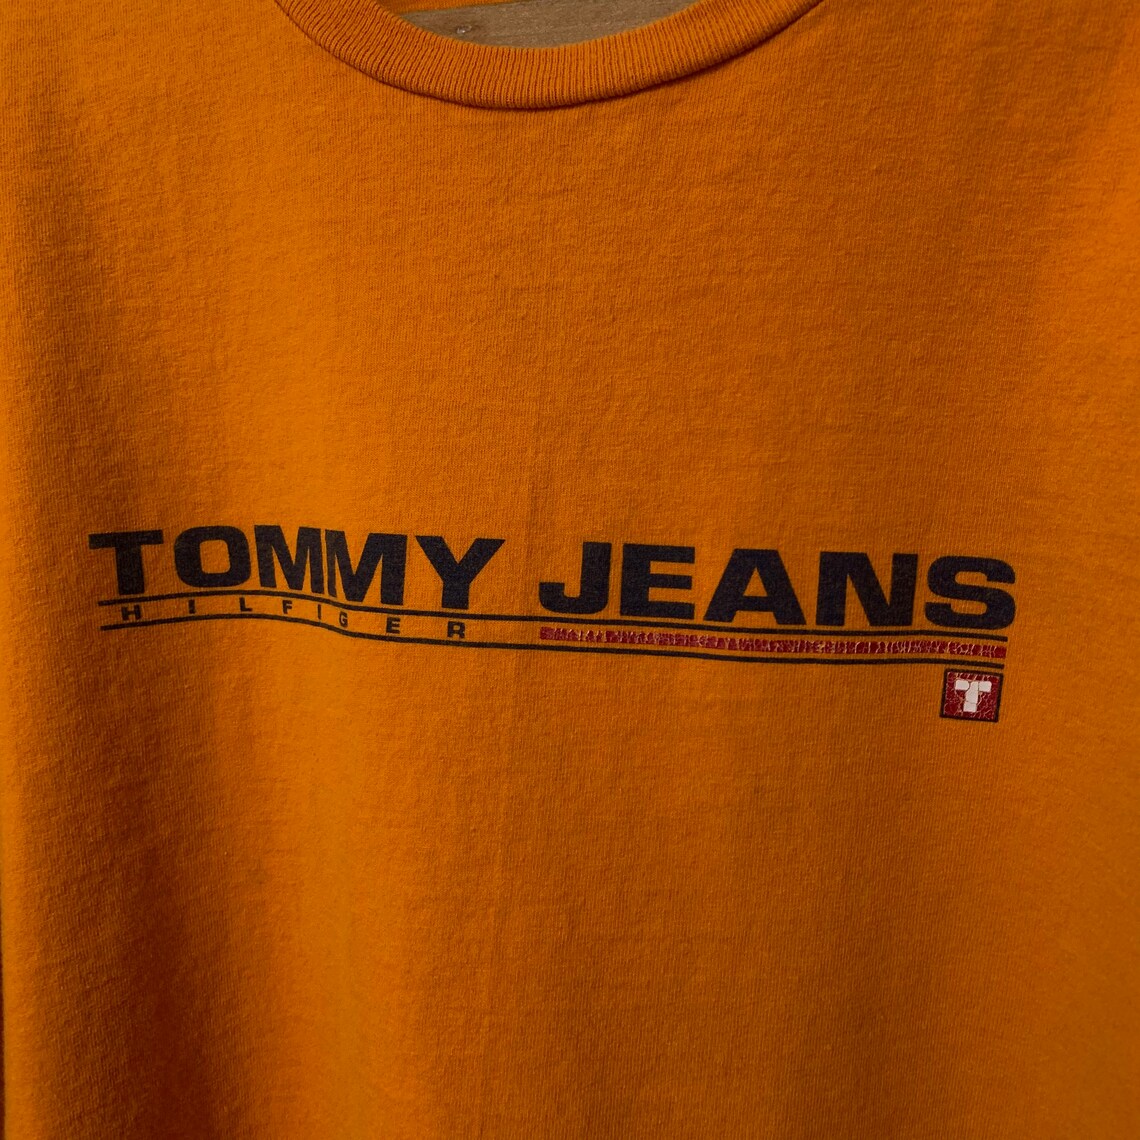 Vintage Tommy Hilfiger Jeans T-Shirt | Etsy